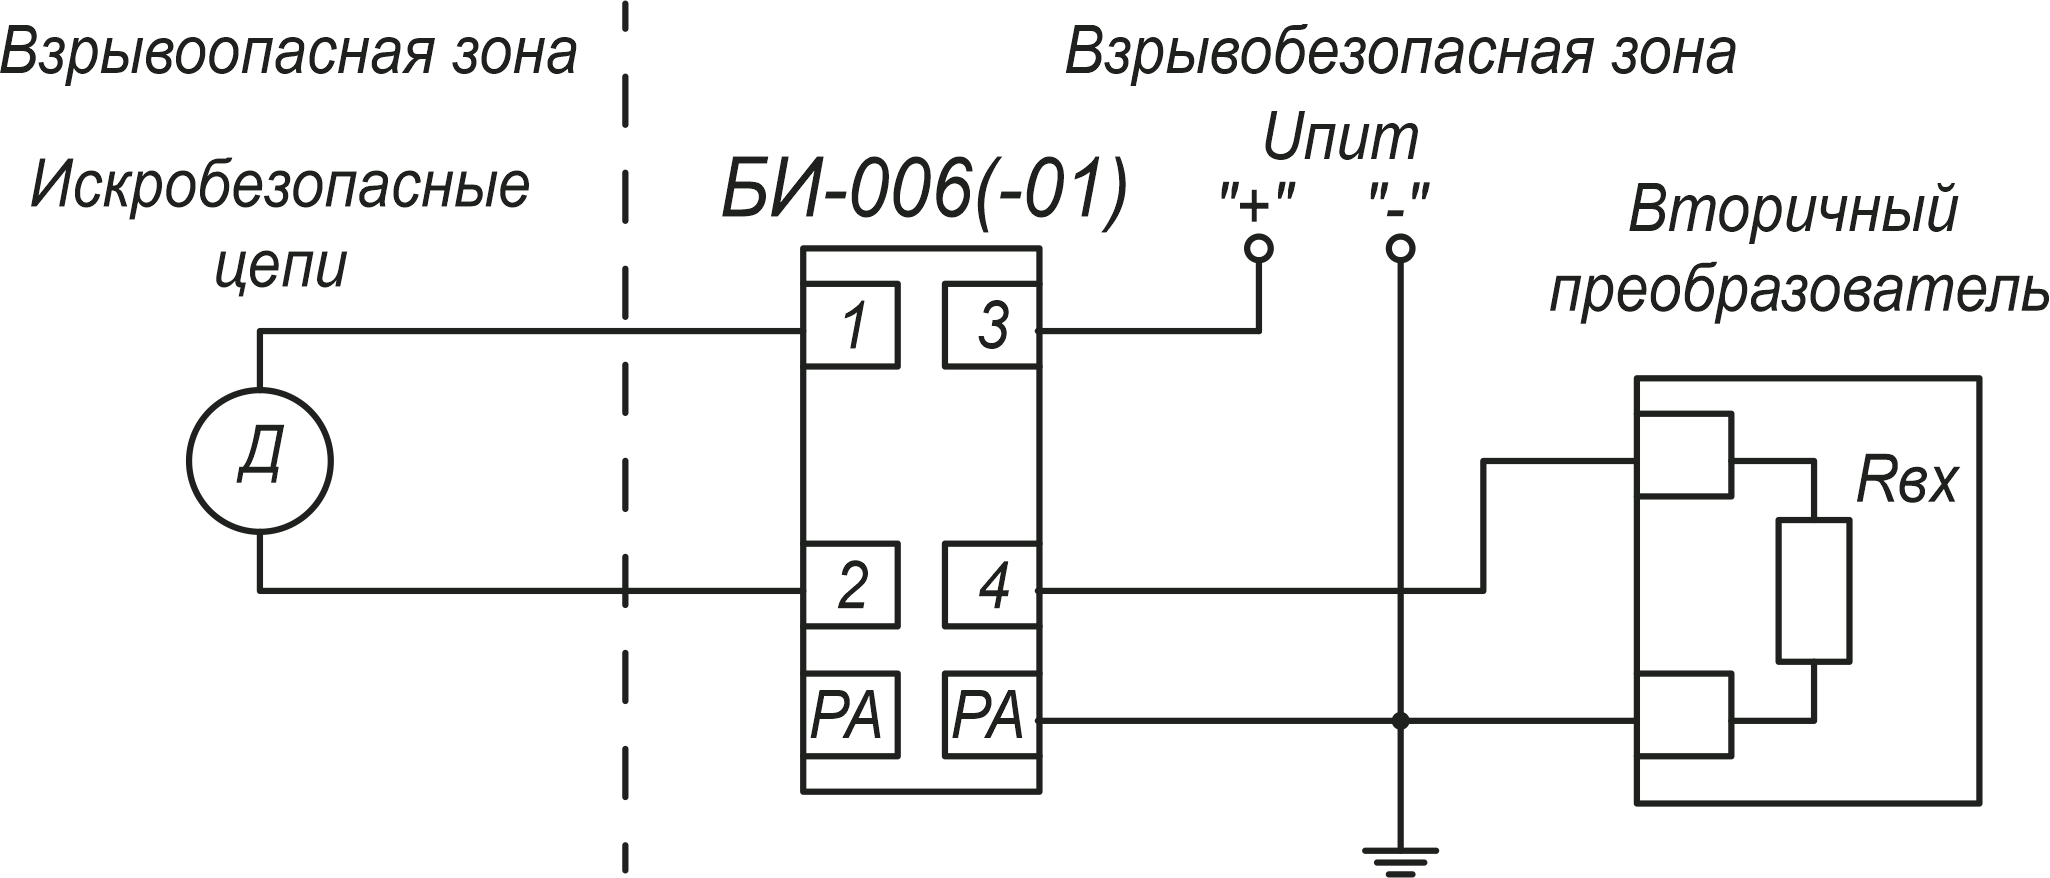 БИ-006-01 Типовая схема подключения